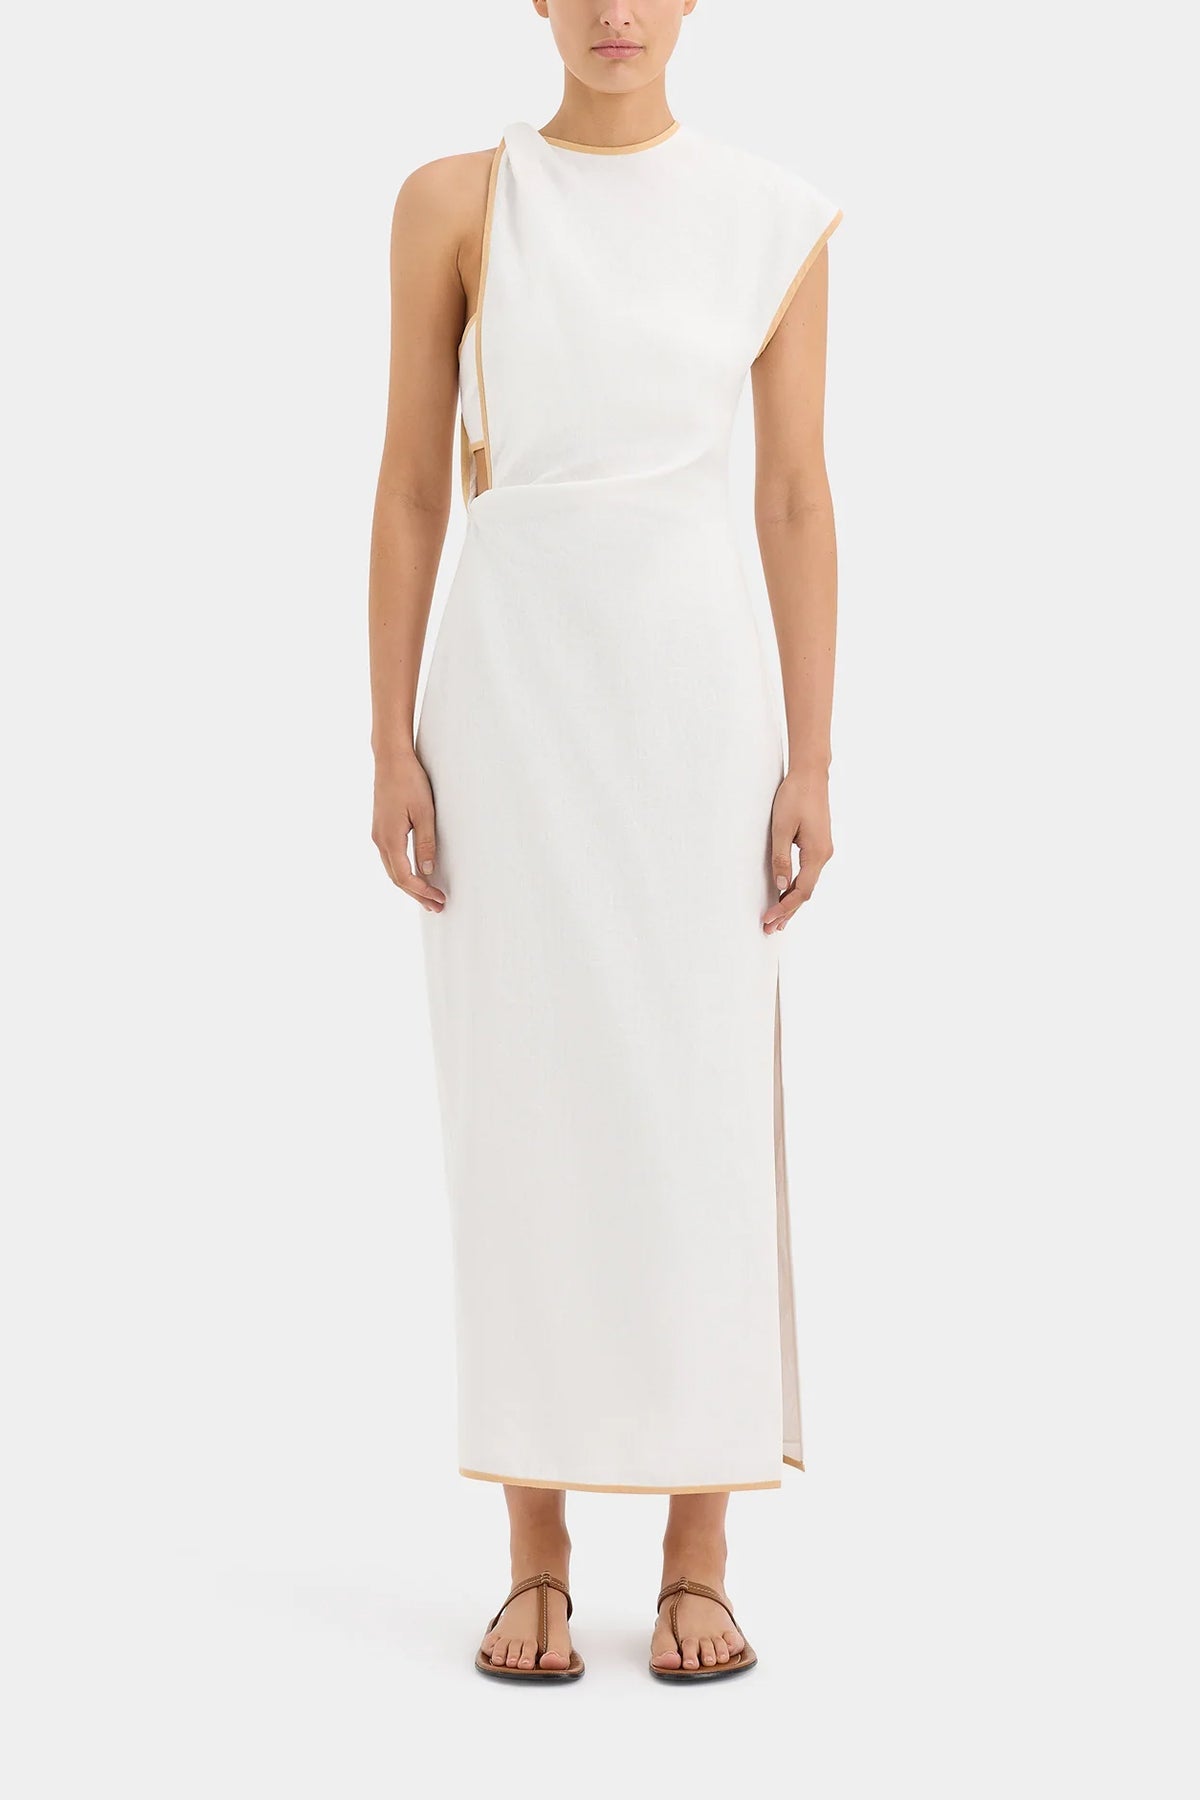 Noemi Cut-Out Midi Dress in Ivory - shop-olivia.com